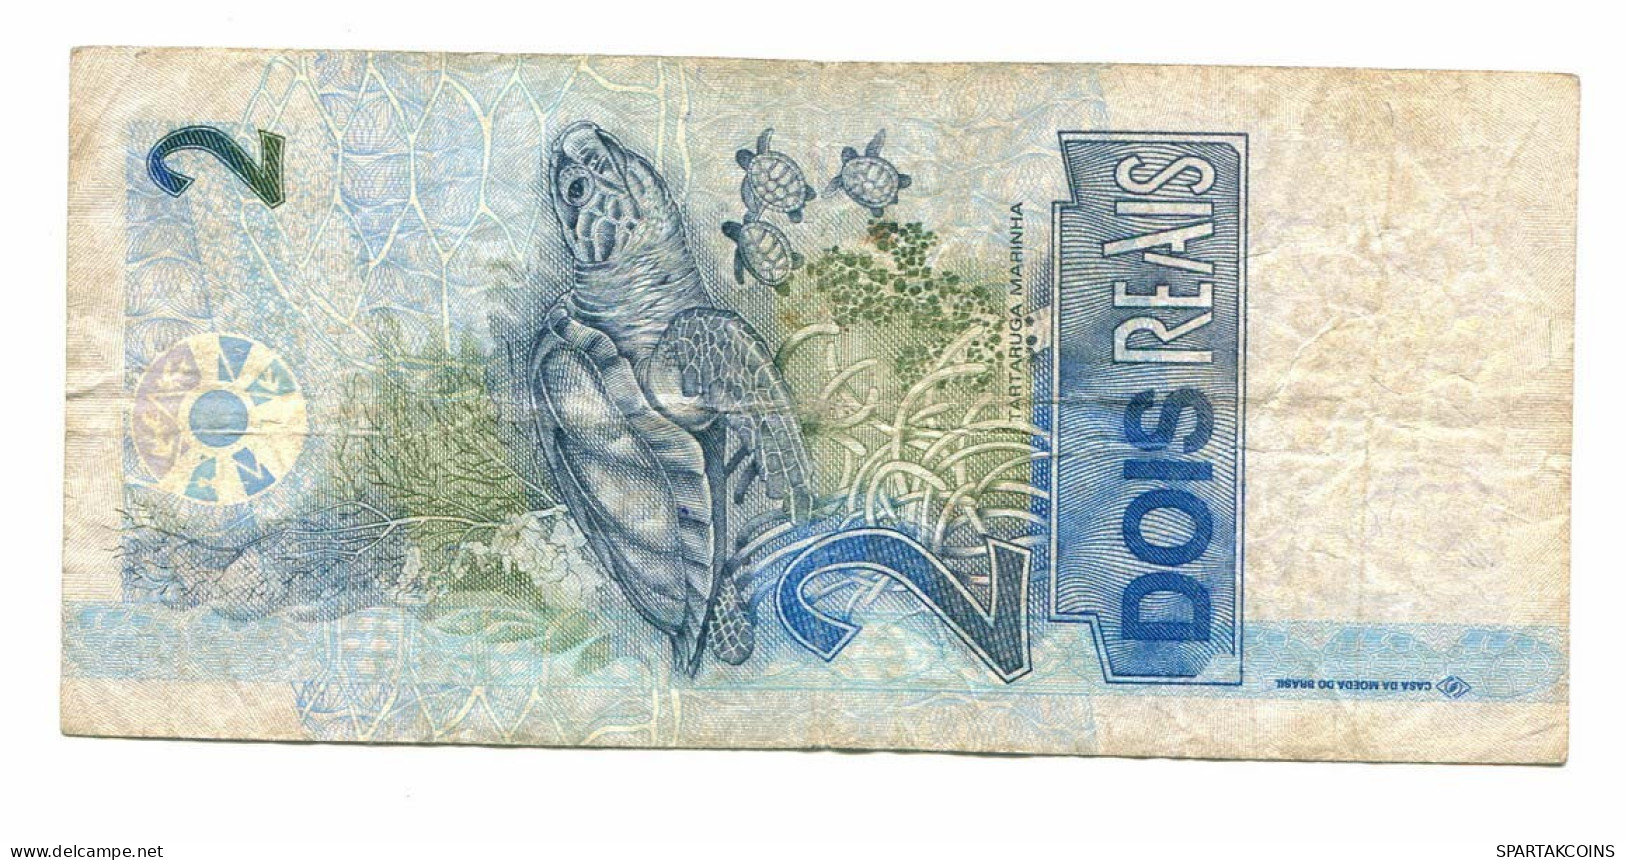 BRASIL 2 REAIS 2001 Tartaruga Paper Money Banknote #P10829.4 - Lokale Ausgaben